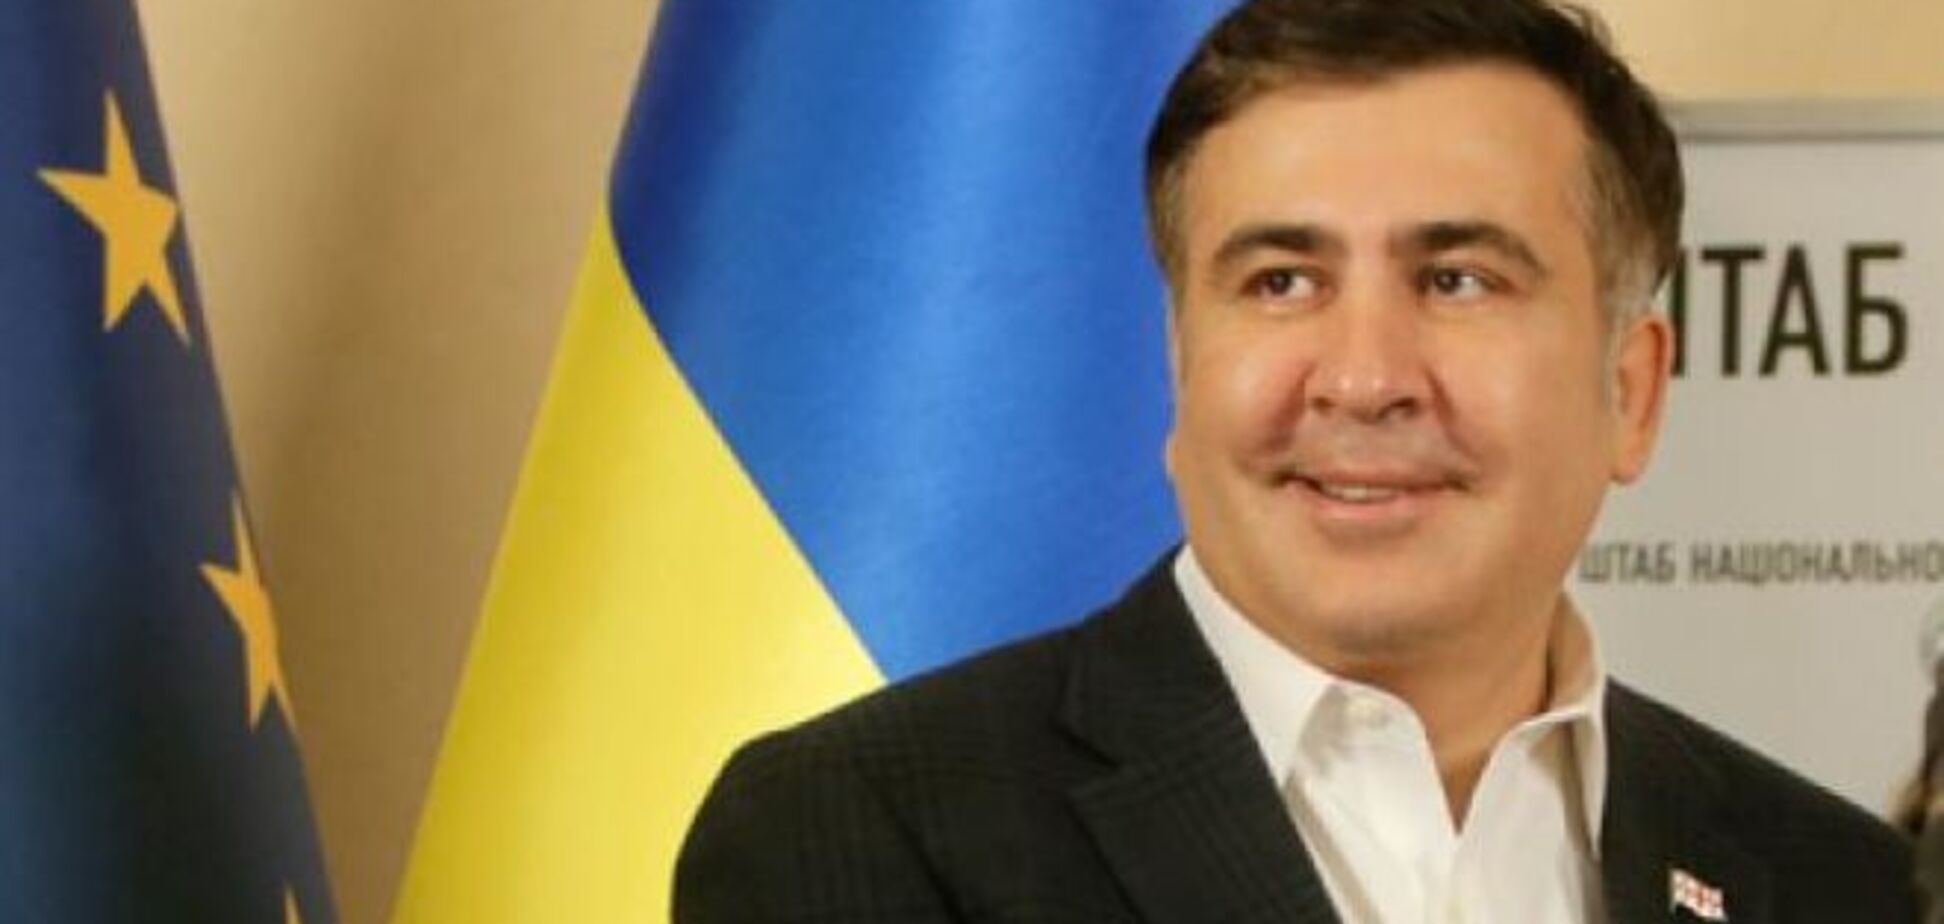 Саакашвили стал гражданином Украины – нардепы